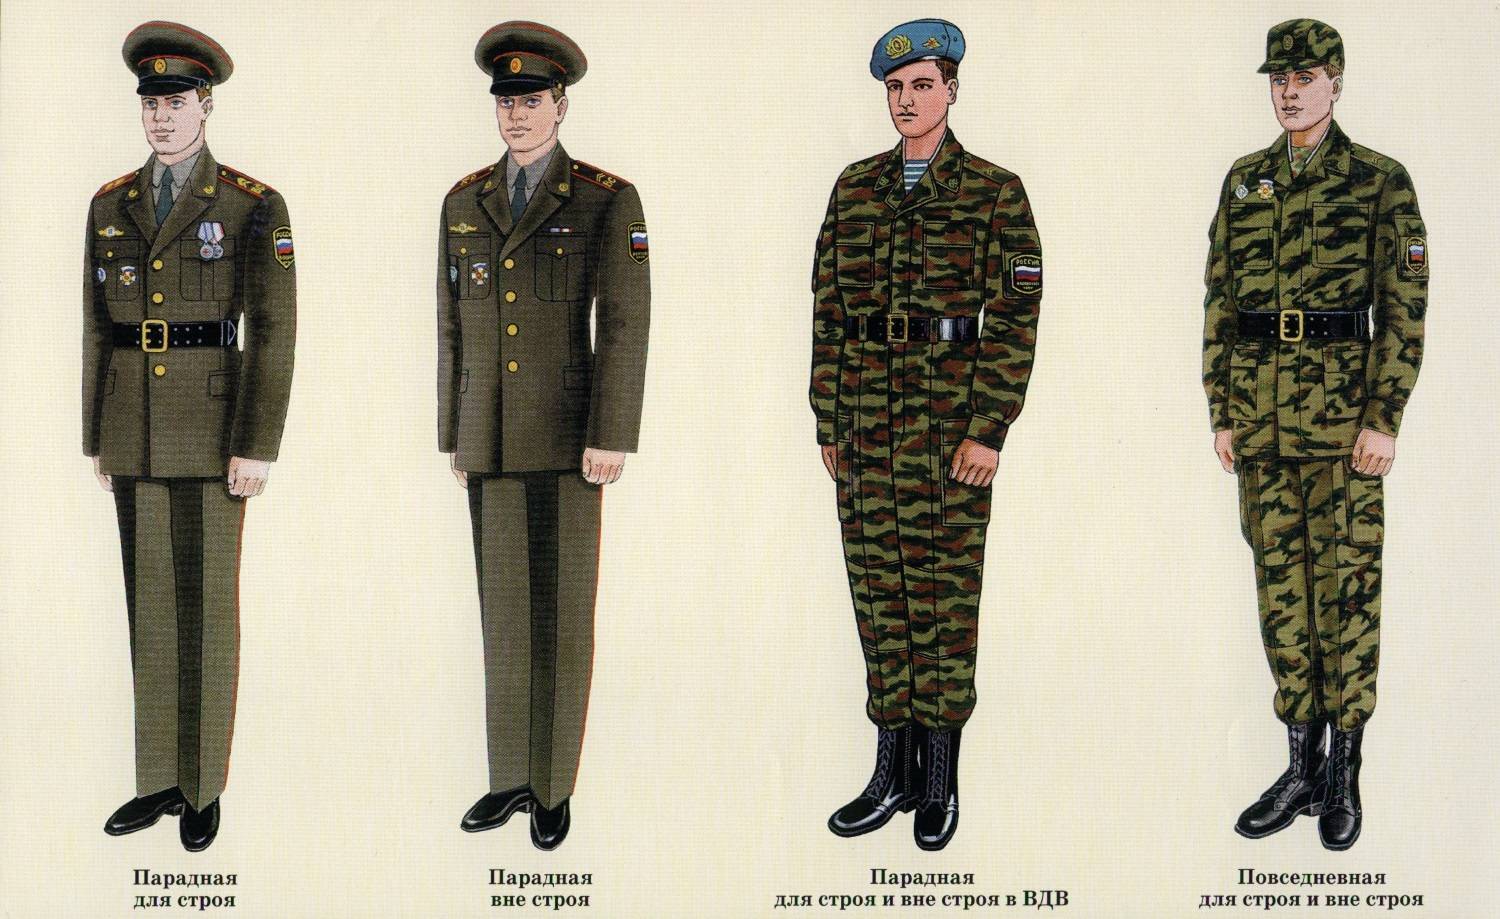 Парадная форма одежды военнослужащих российской армии